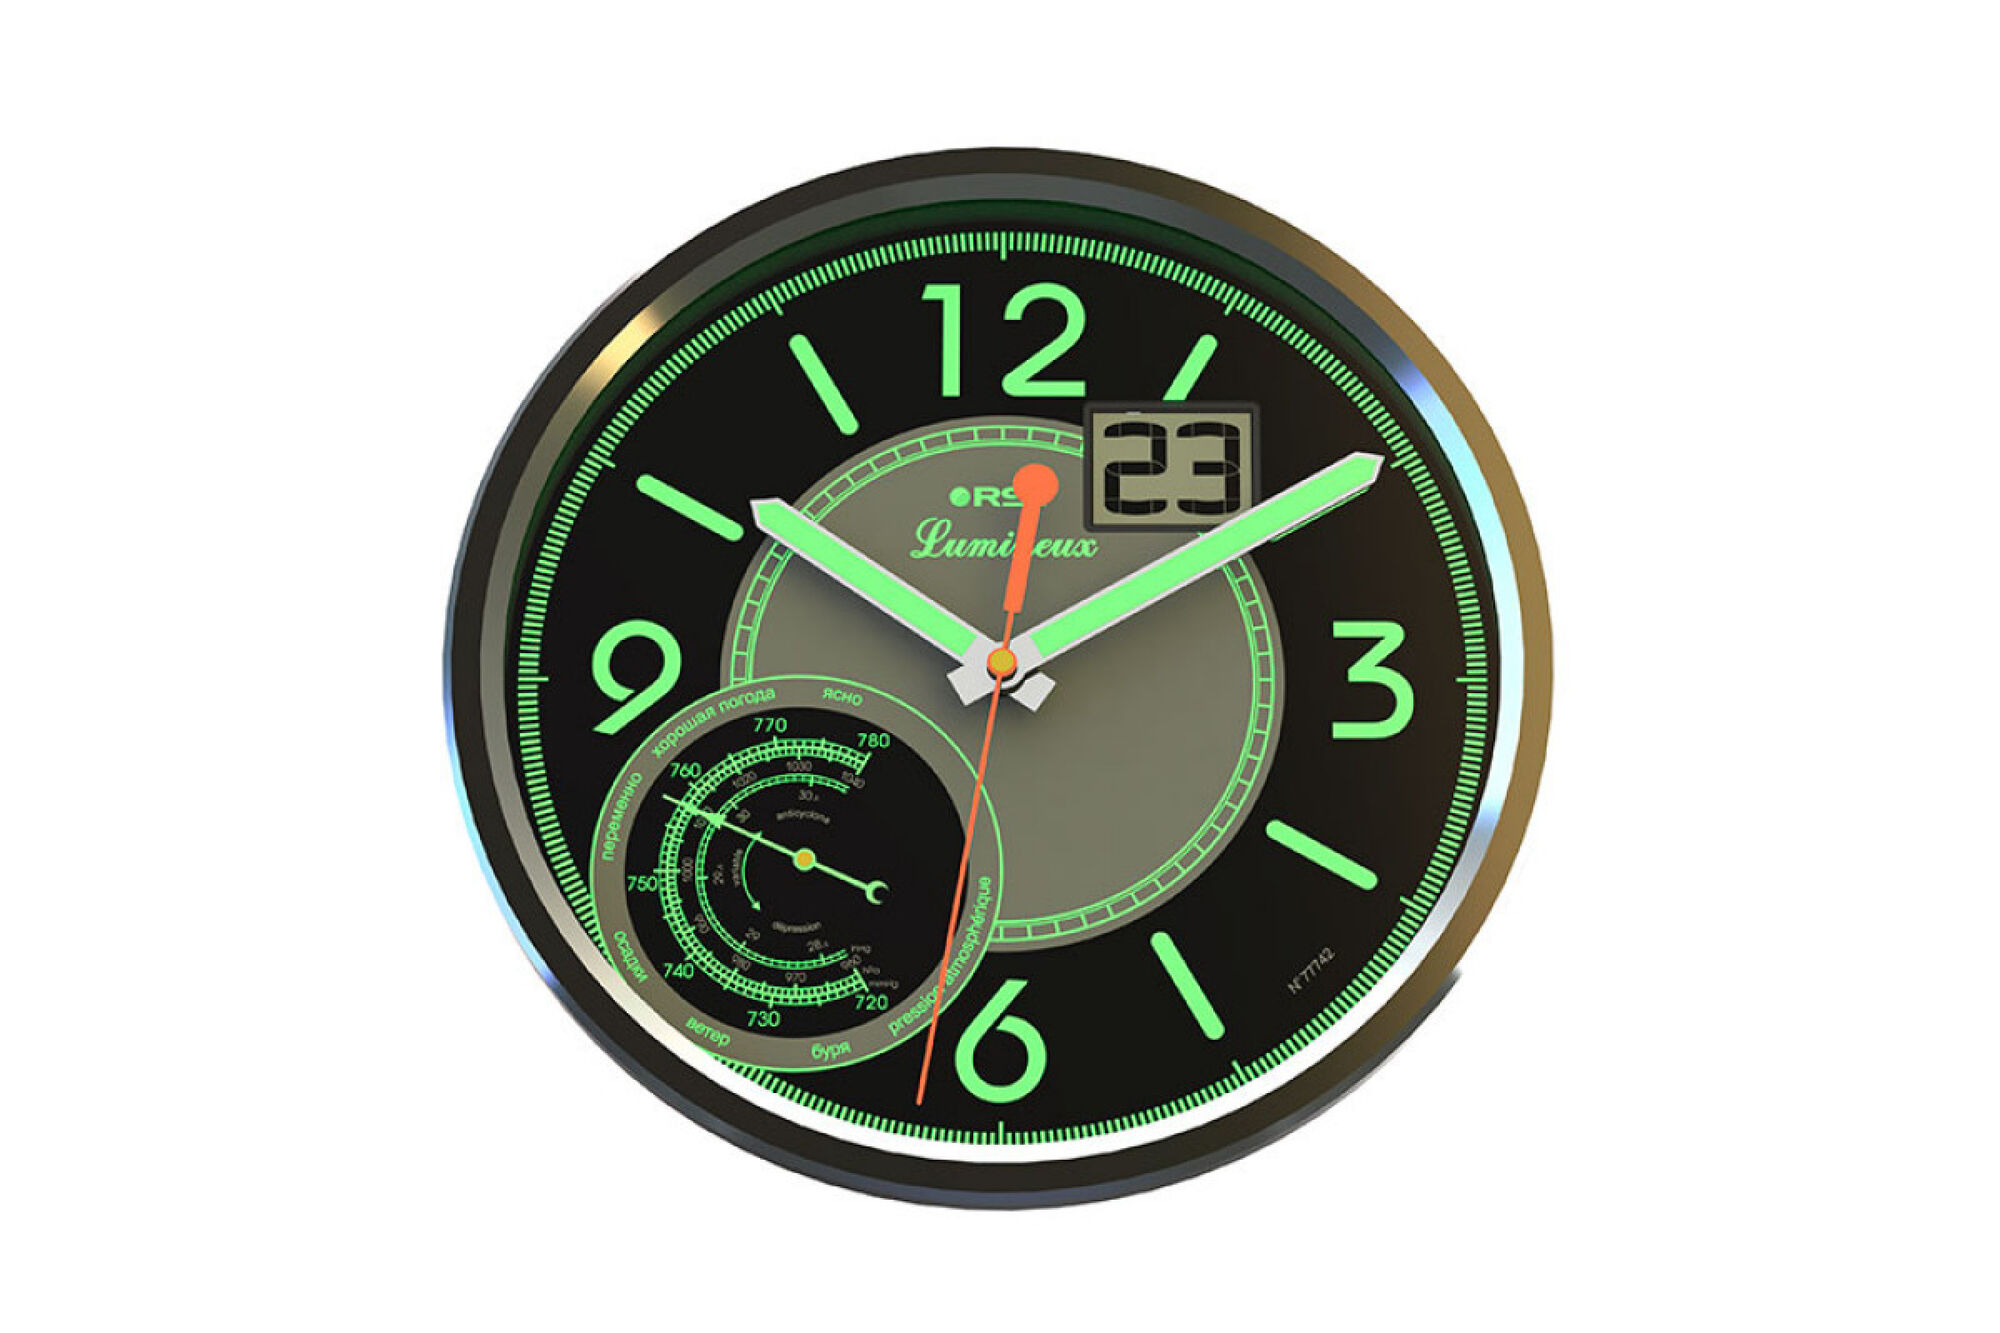 Часы-метеостанция RST, часы, дата, барометр RST77742